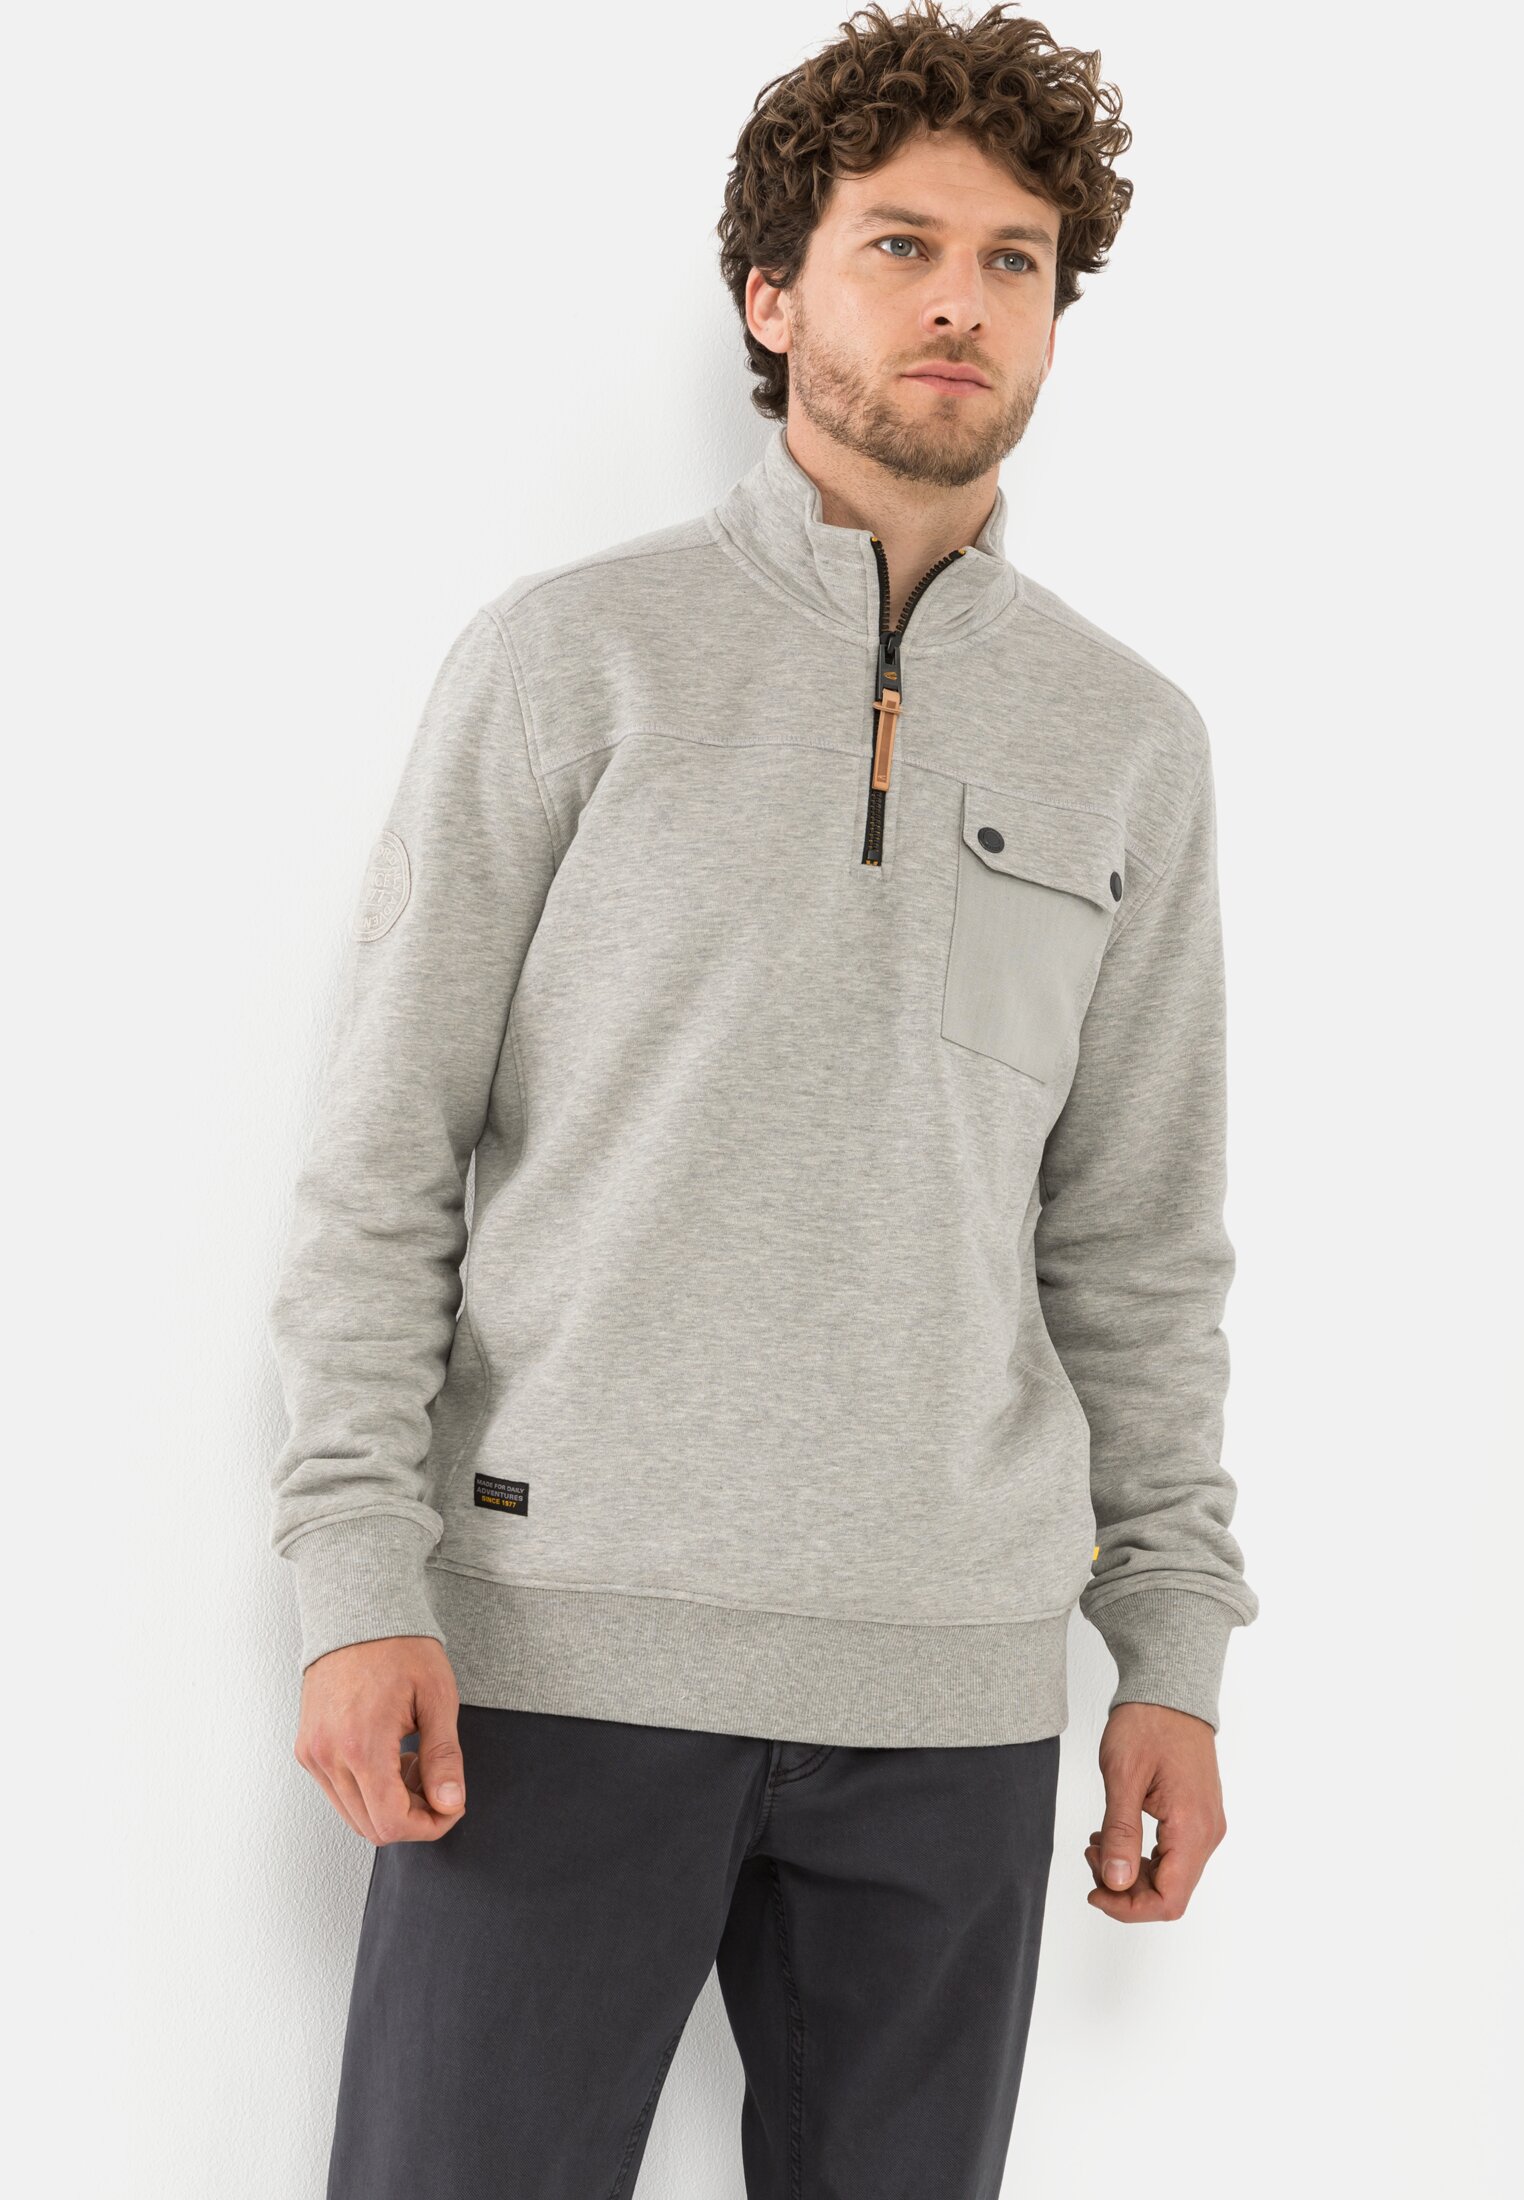 Sweatshirt Troyer for Herren in Grey | M | camel active